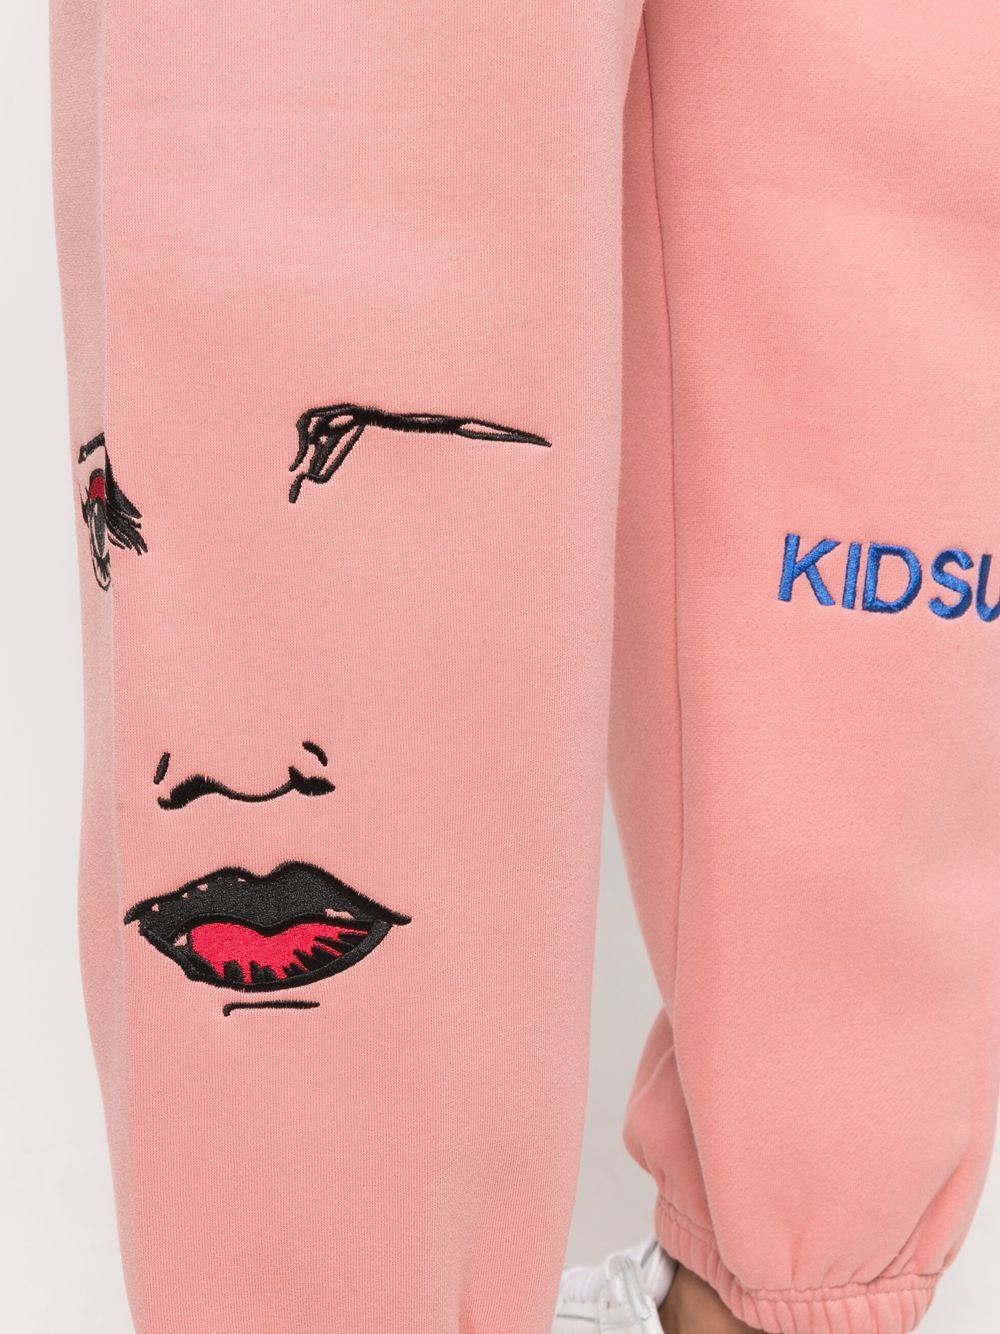 KIDSUPER Embroidered two-pocket track pants Pink - MAISONDEFASHION.COM